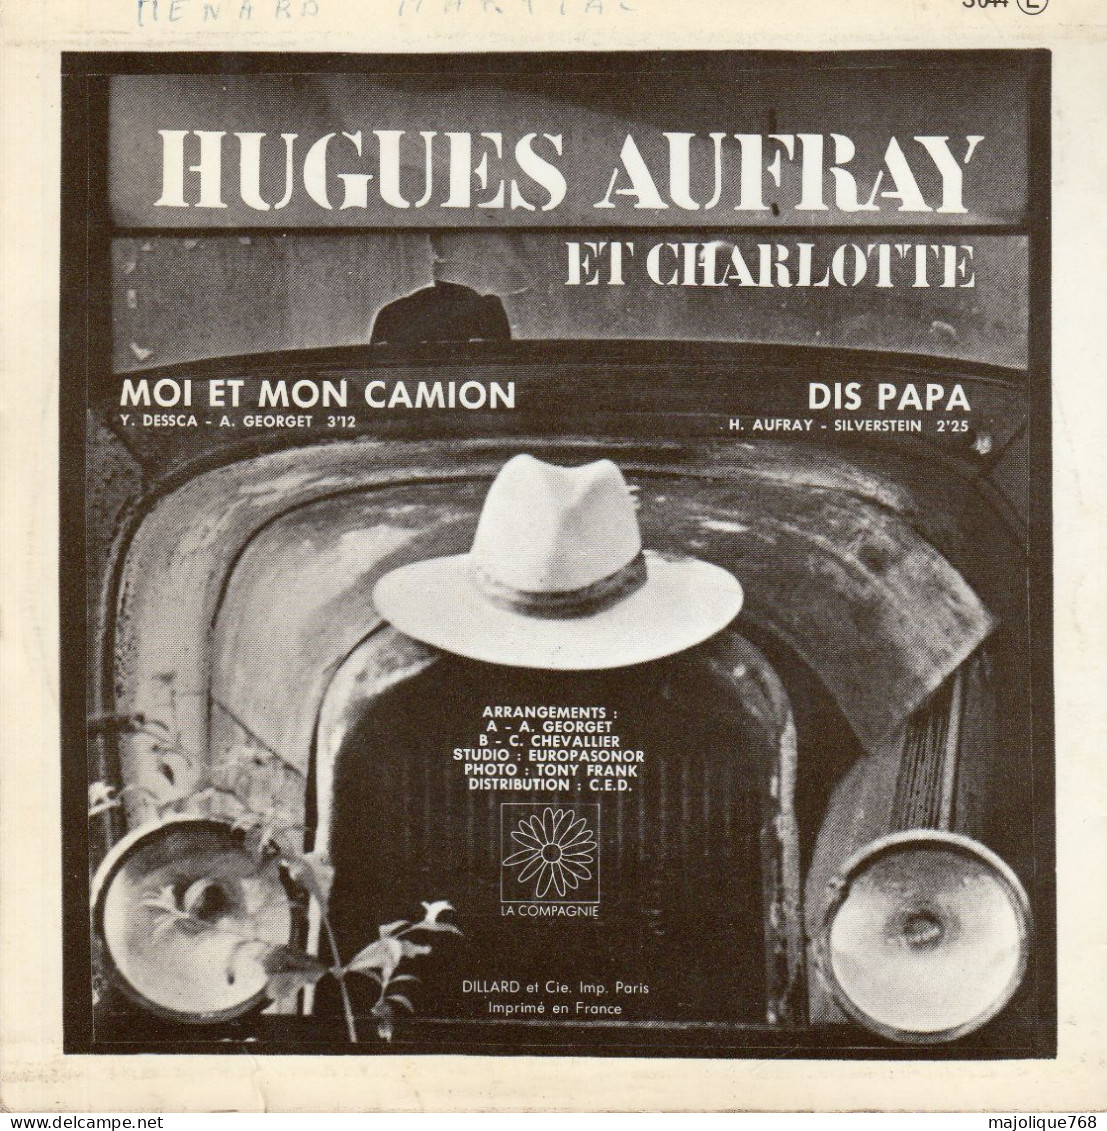 Disque De Hugues Aufray Et Charlotte - Moi Et Mon Camion - La Compagnie S044 - France 1970 - Disco, Pop